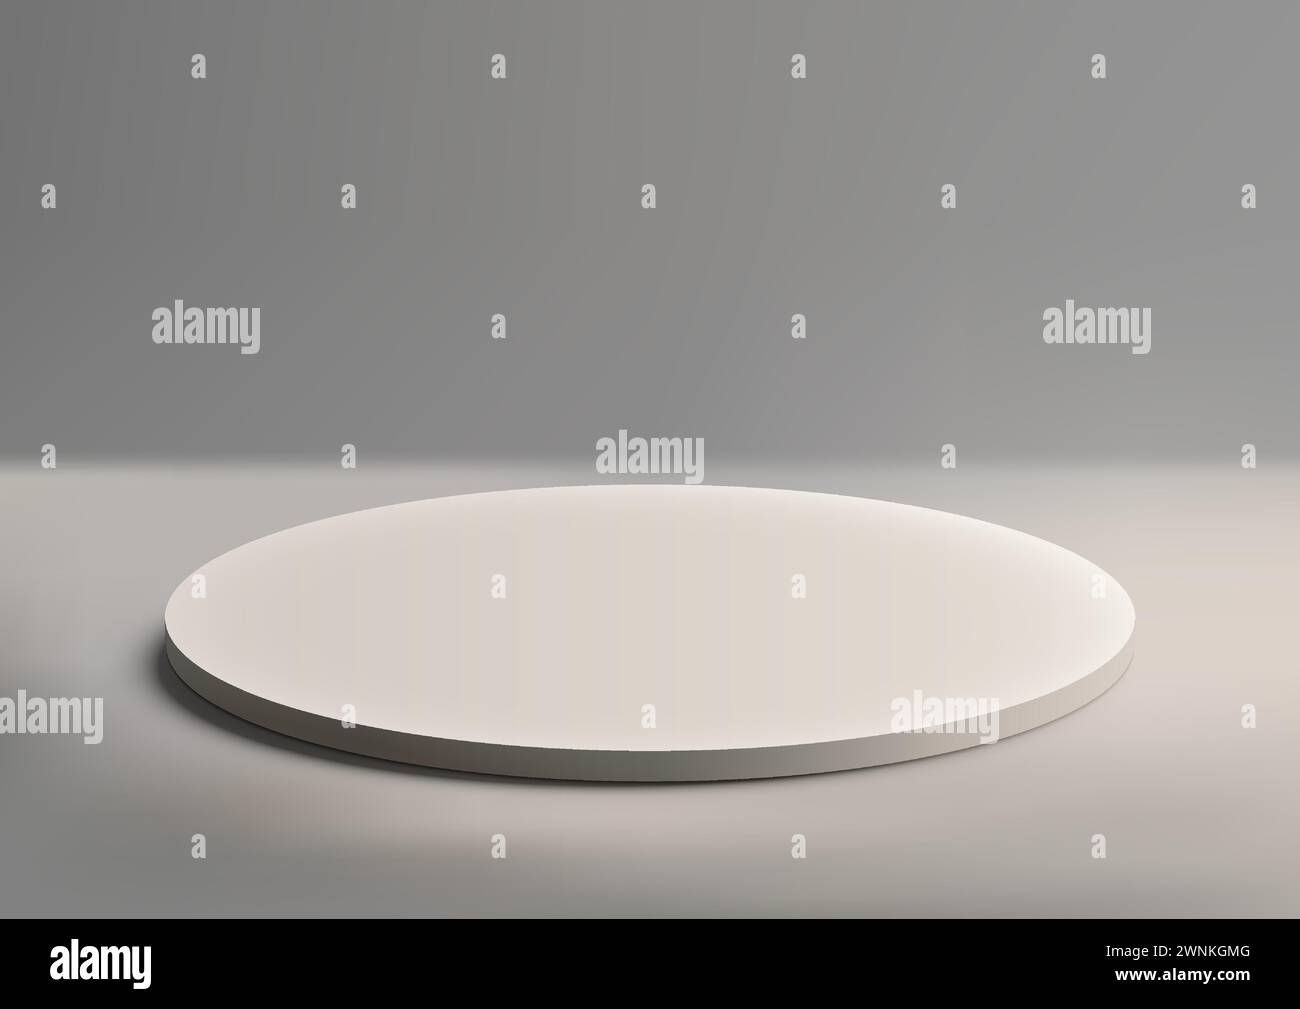 Podium de cercle blanc 3D sur fond gris, style minimal, affichage du produit, vitrine, conception de présentation maquette. Illustration vectorielle Illustration de Vecteur